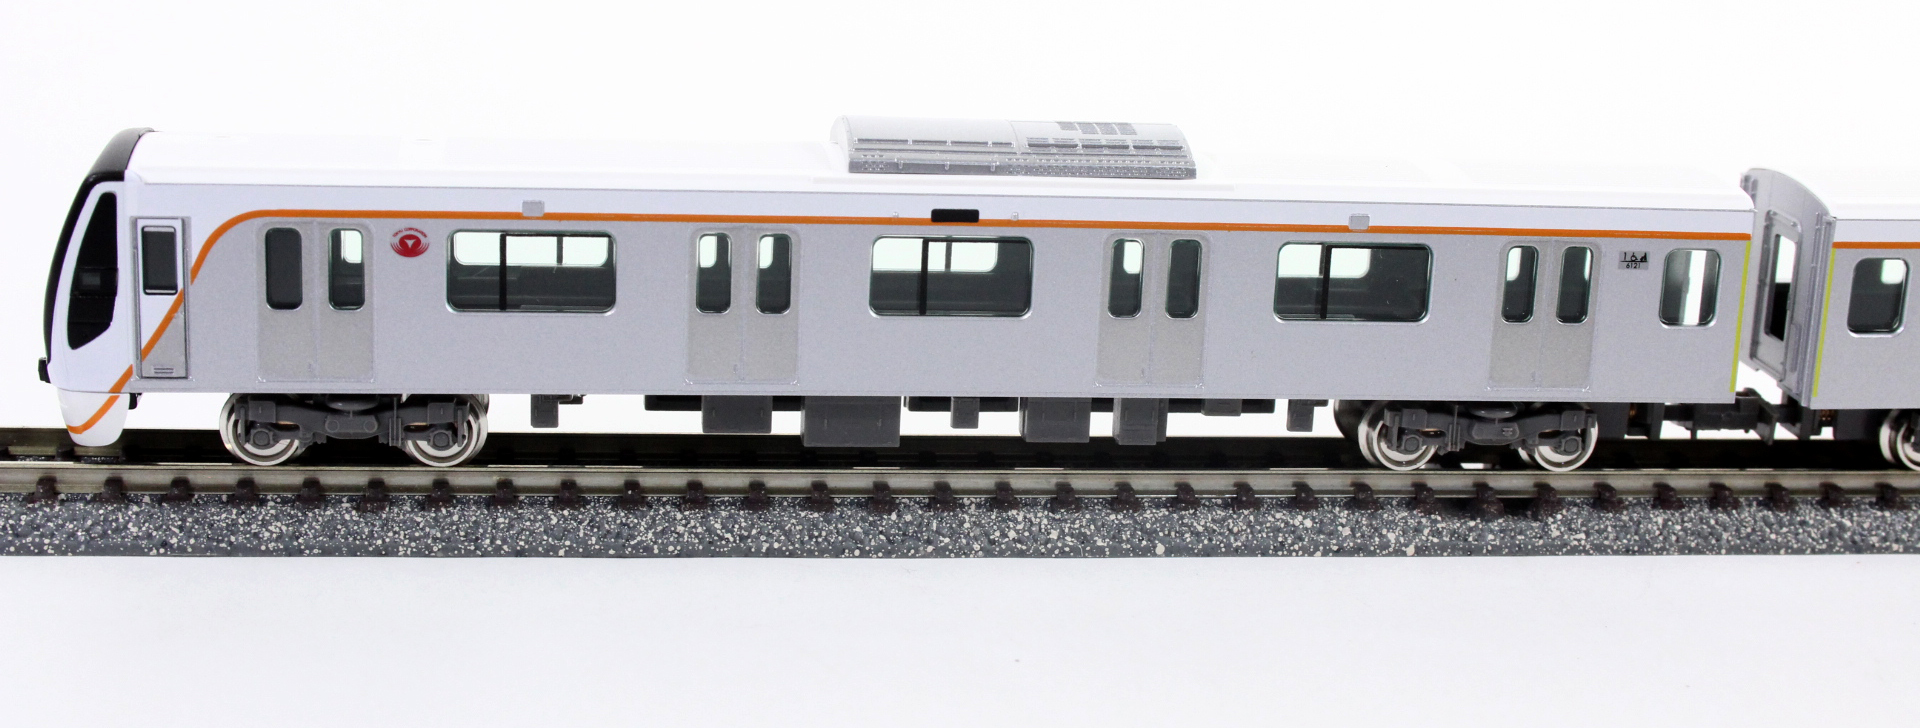 買い30750 東急6020系(大井町線) 7両編成セット(動力付き) Nゲージ 鉄道模型 GREENMAX(グリーンマックス) 私鉄車輌